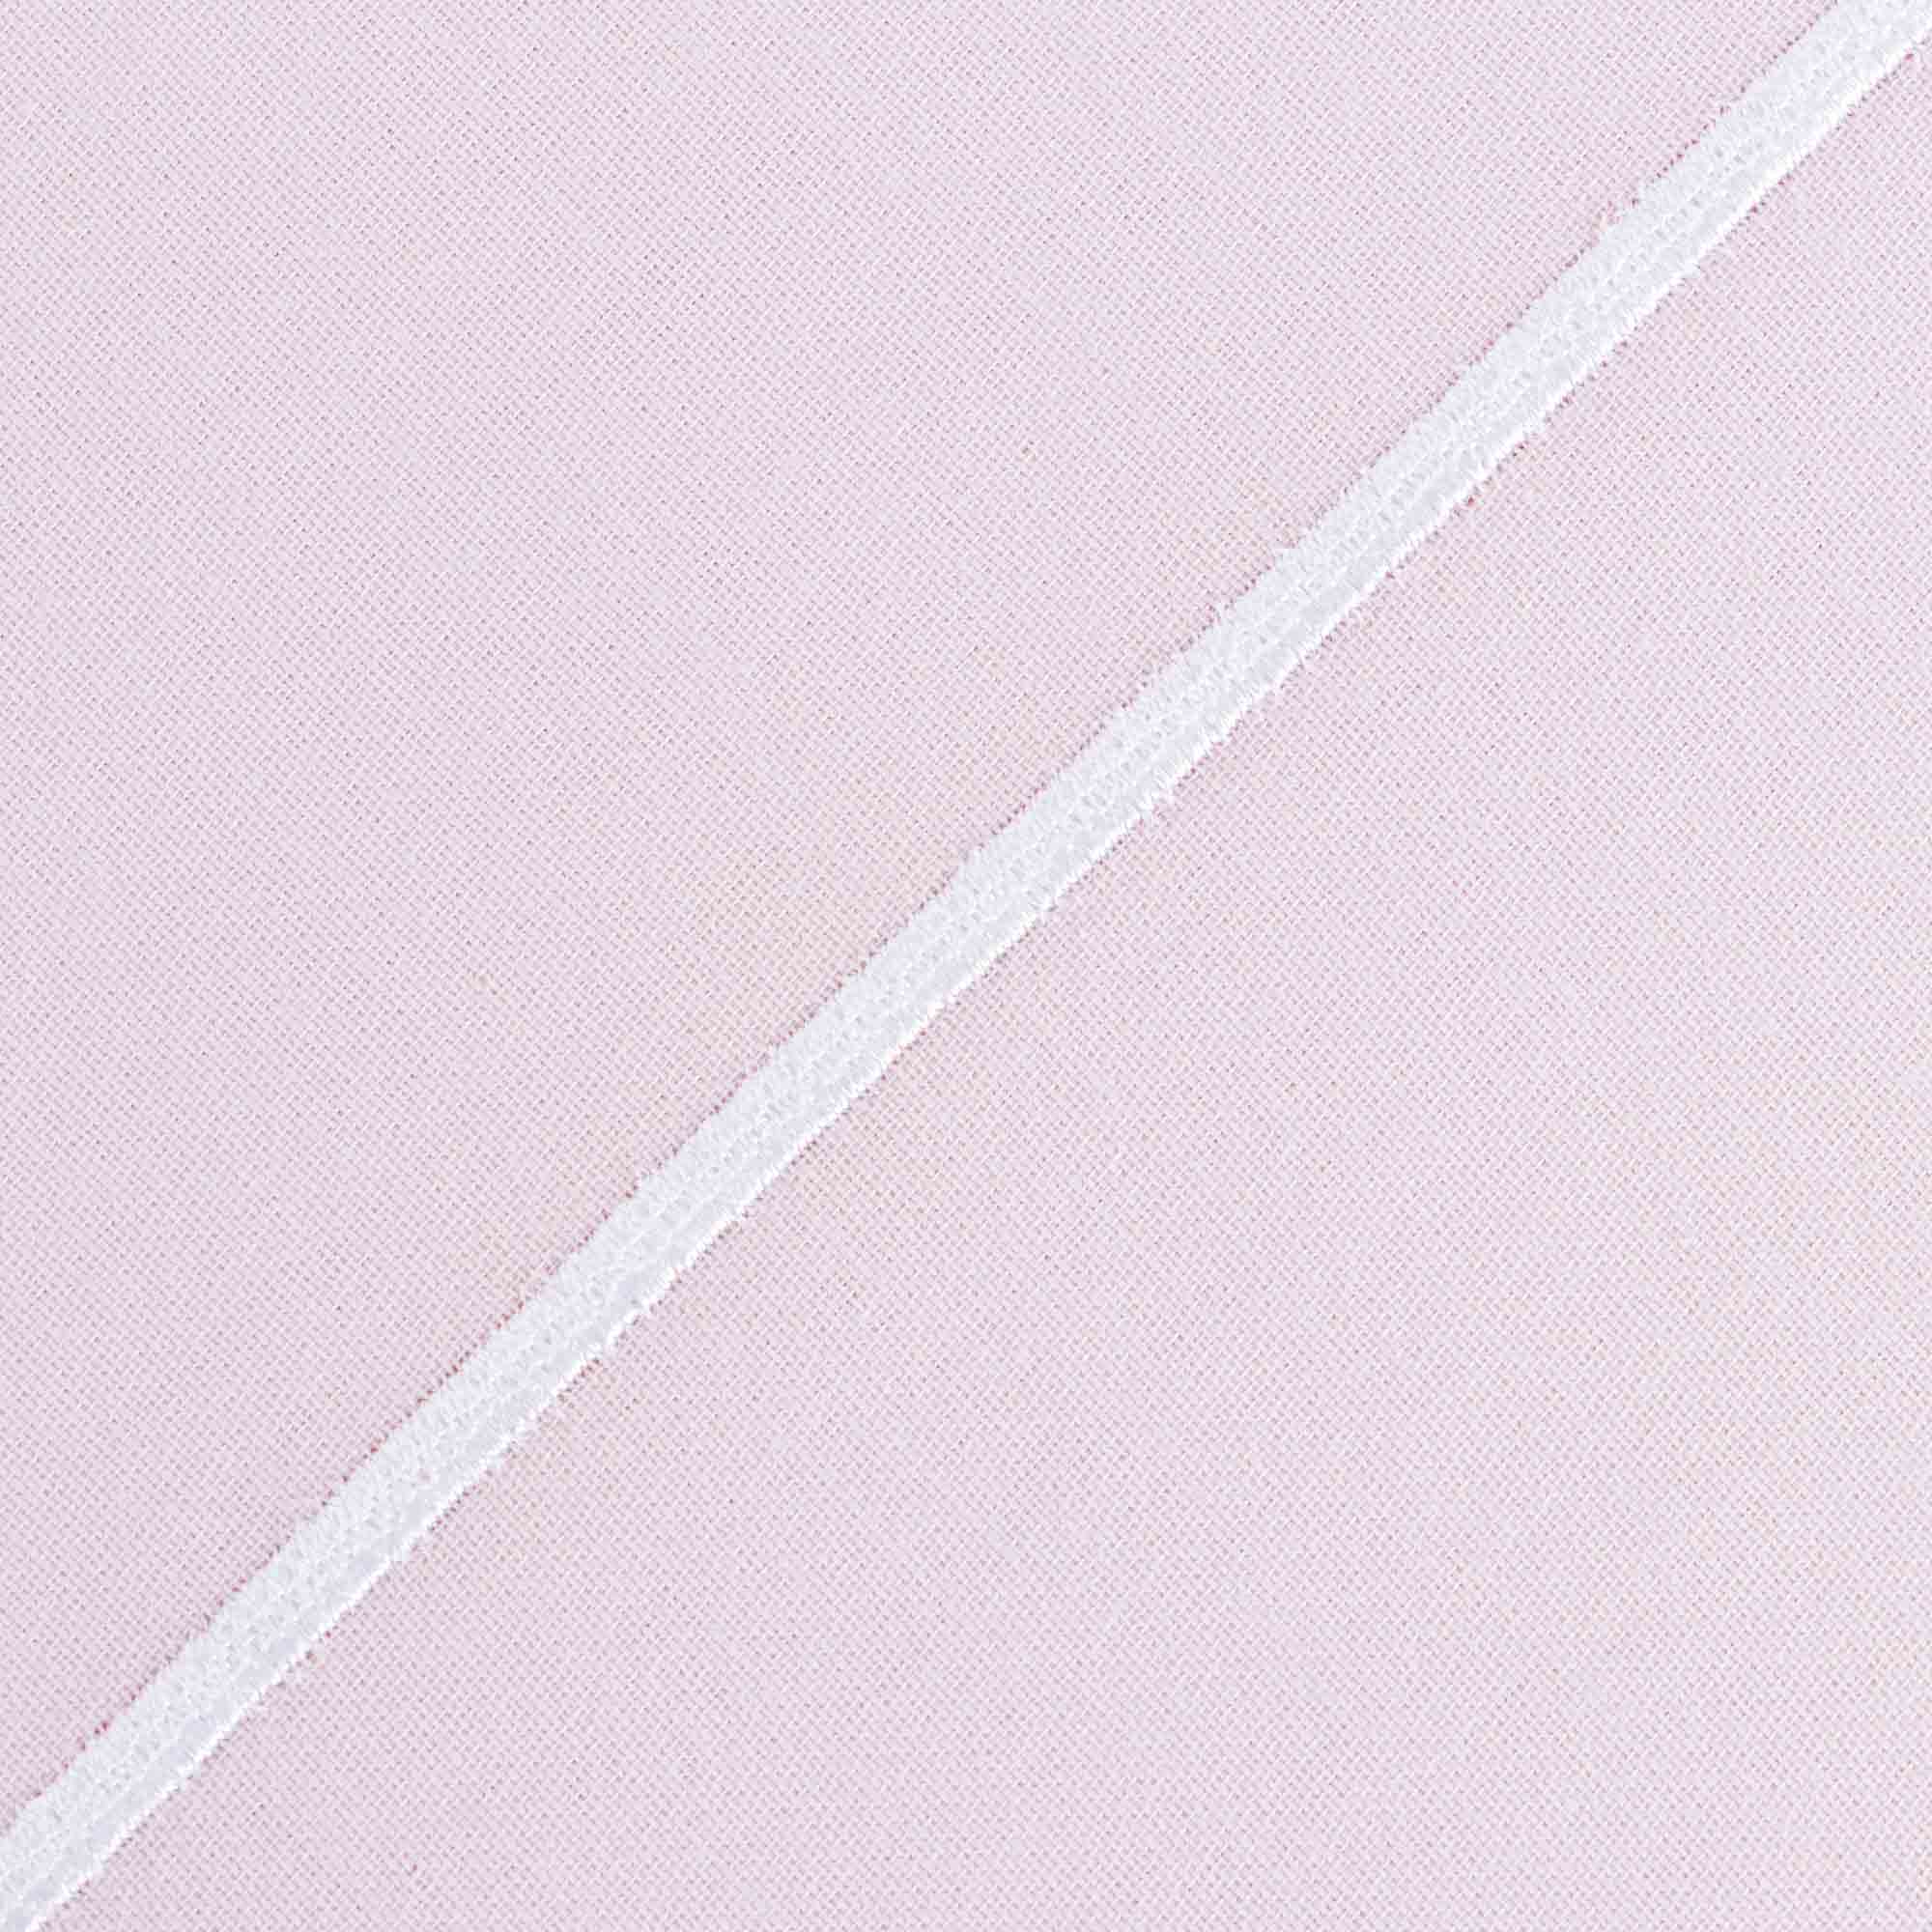 Постельный комплект полуторный Bella casa chinte rose / white stripes, размер полуторный - фото 3